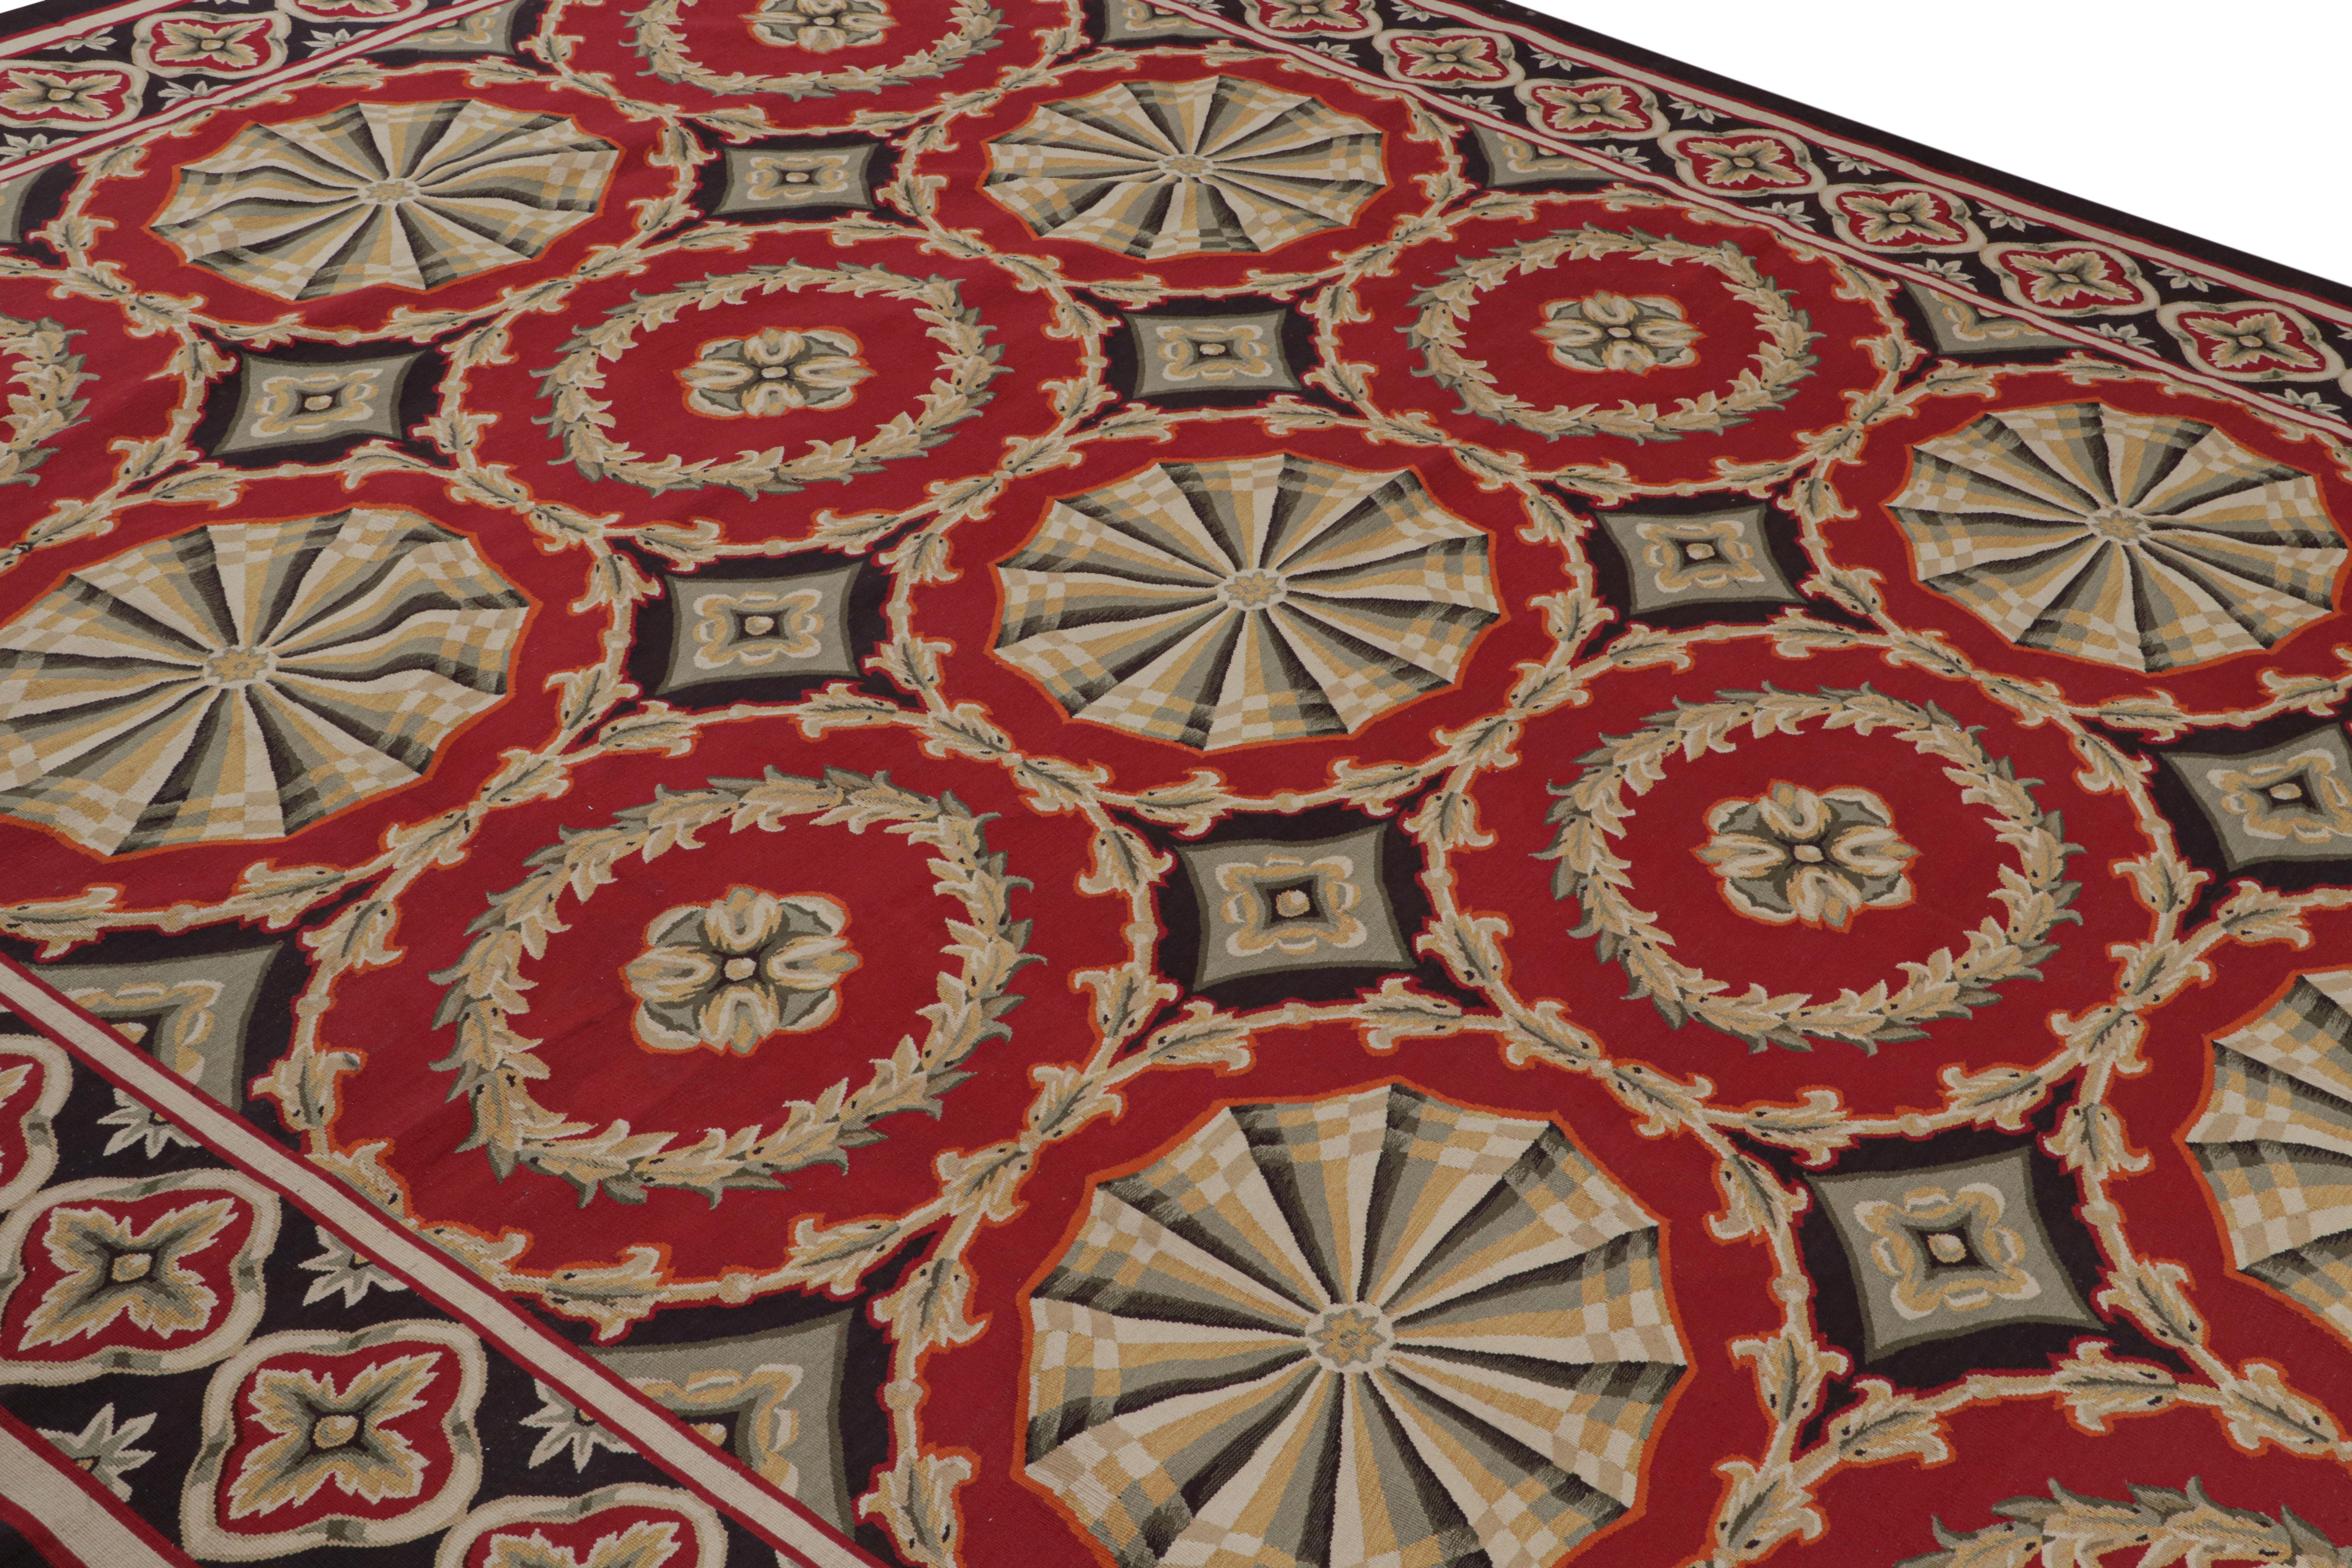 Dieser 9x11 große, handgewebte Wollteppich ist eine Neuheit aus der europäischen Teppichkollektion von Rug & Kilim - eine der ersten Arbeiten des Unternehmens, inspiriert von antiken Aubusson-Teppichen und Wandteppichen. 

Über das Design: